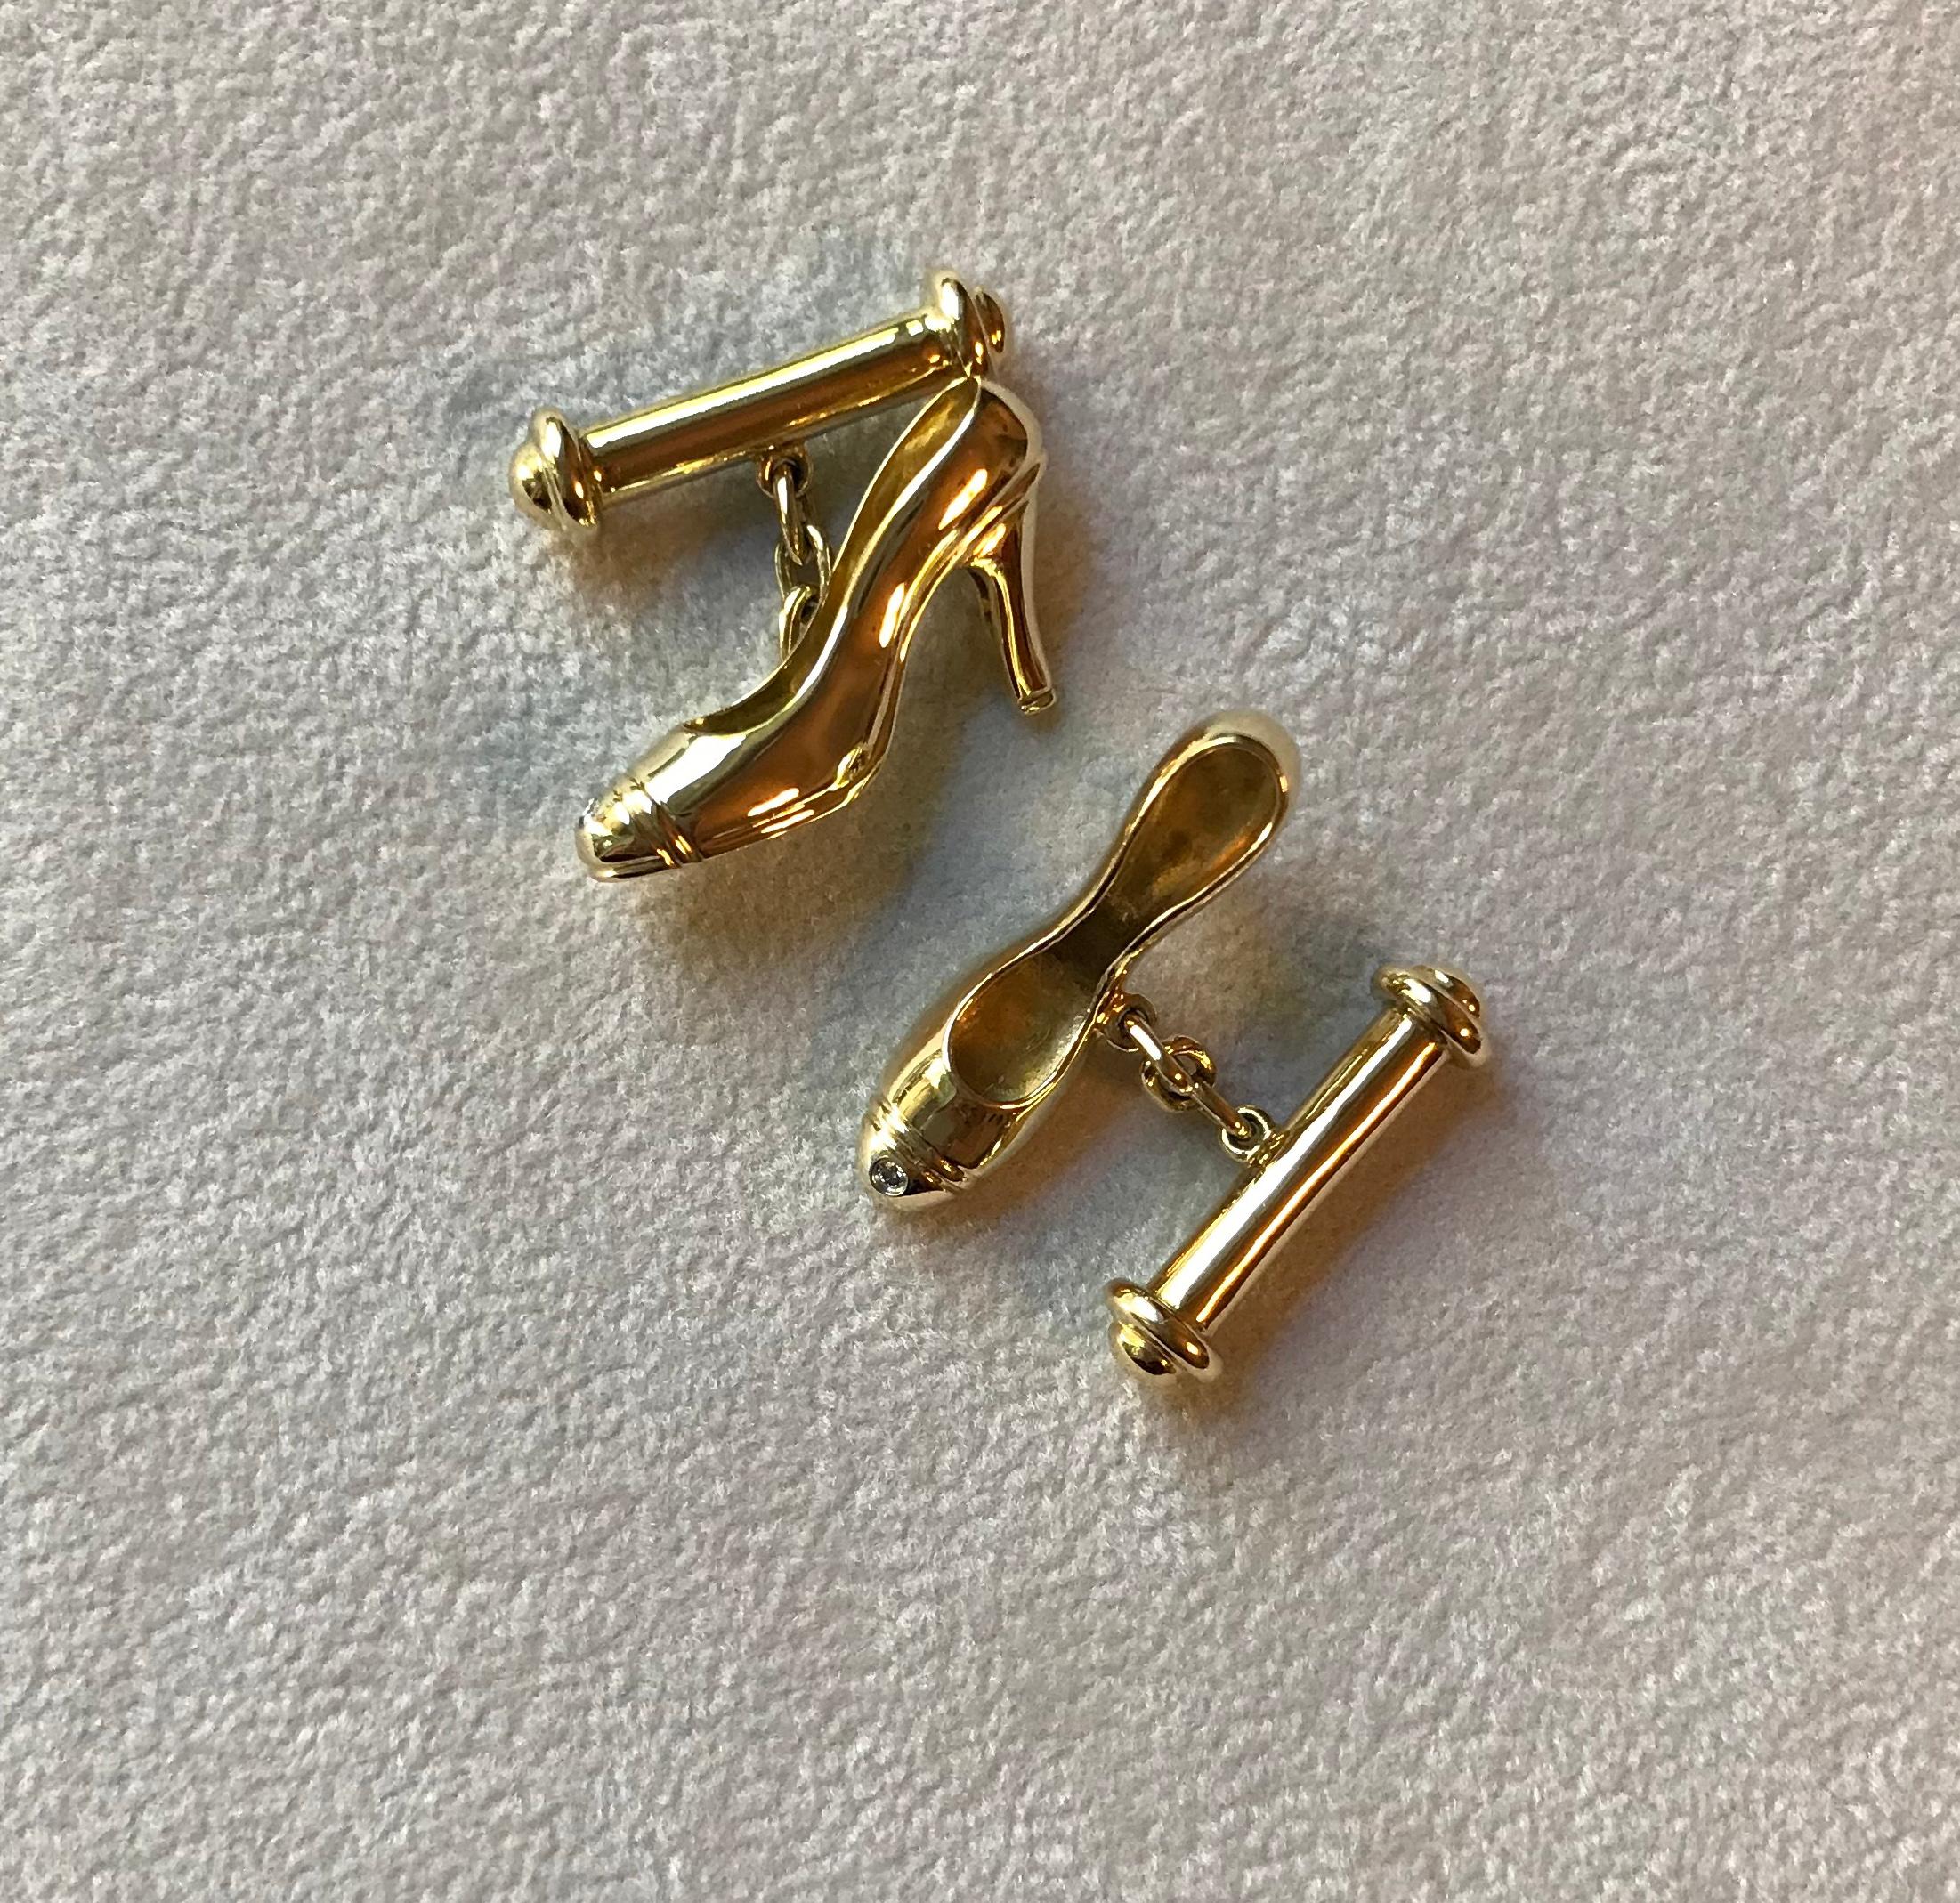 Le design délicat de cette paire de boutons de manchette la rend idéale également pour la garde-robe d'une femme. L'ensemble de la pièce est en or jaune 18k. La face avant a la forme d'une charmante chaussure à talons ornée au sommet d'un diamant.